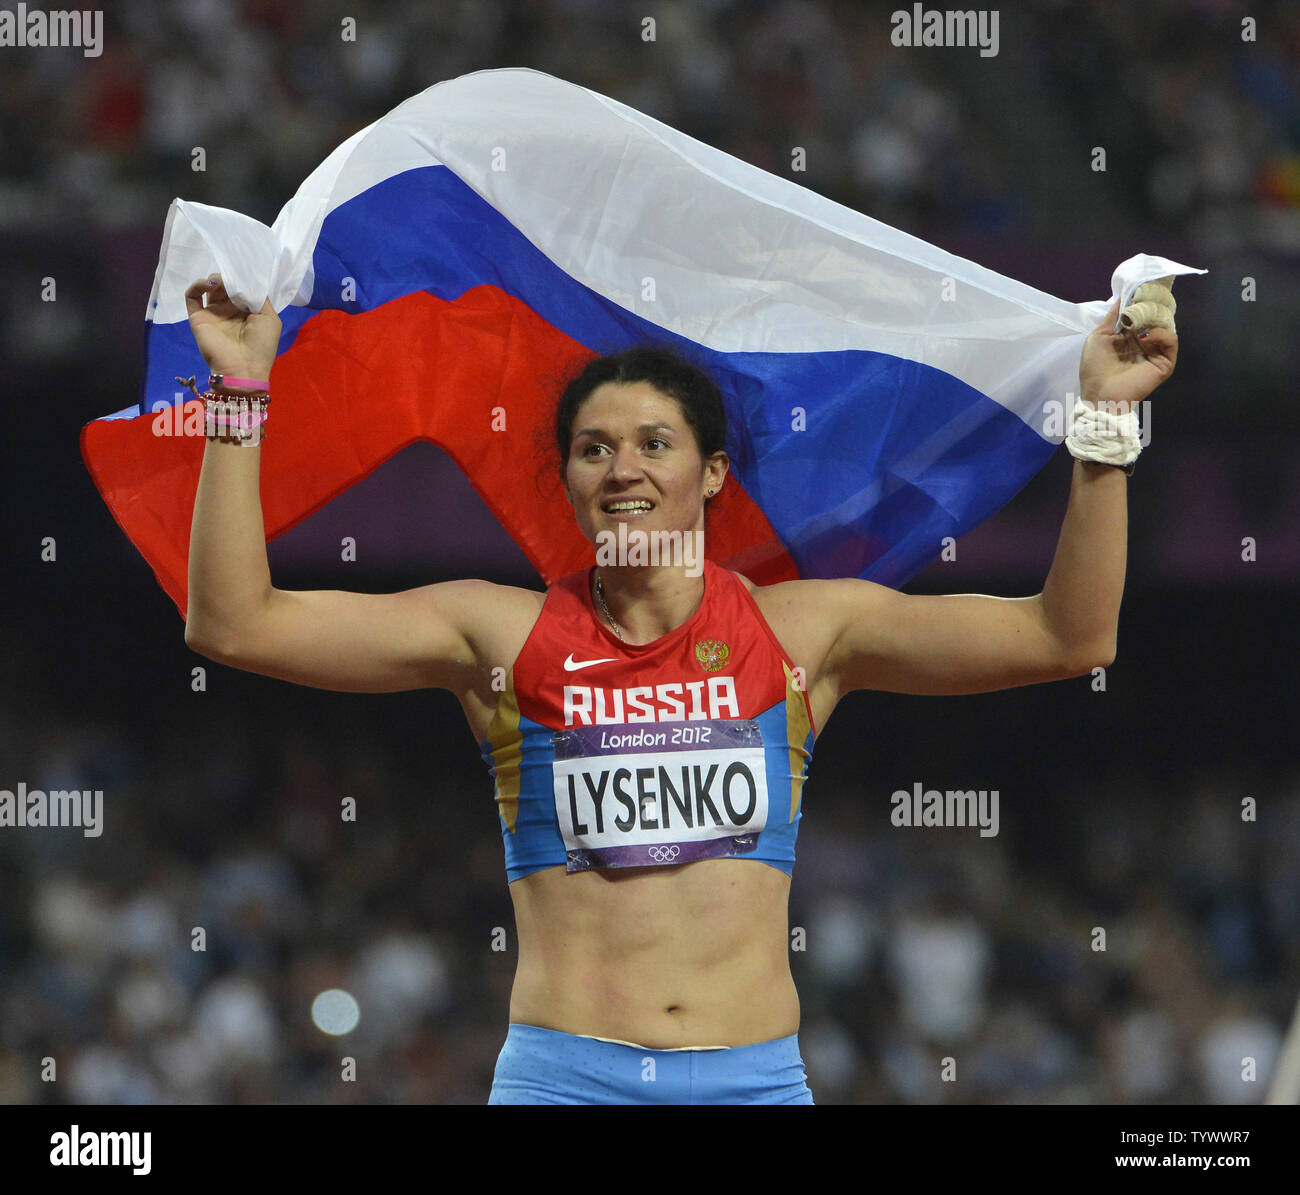 Tatjana Lysenko von Russland feiert nach dem Gewinn einer Goldmedaille im Hammer der Frauen Finale bei den Olympischen Spielen 2012 in London am 10. August werfen, 2012 in Stratford, London. Lyssenko einen olympischen Rekord mit einem Throw von 78.18 M in der Endrunde. UPI/Brian Kersey Stockfoto